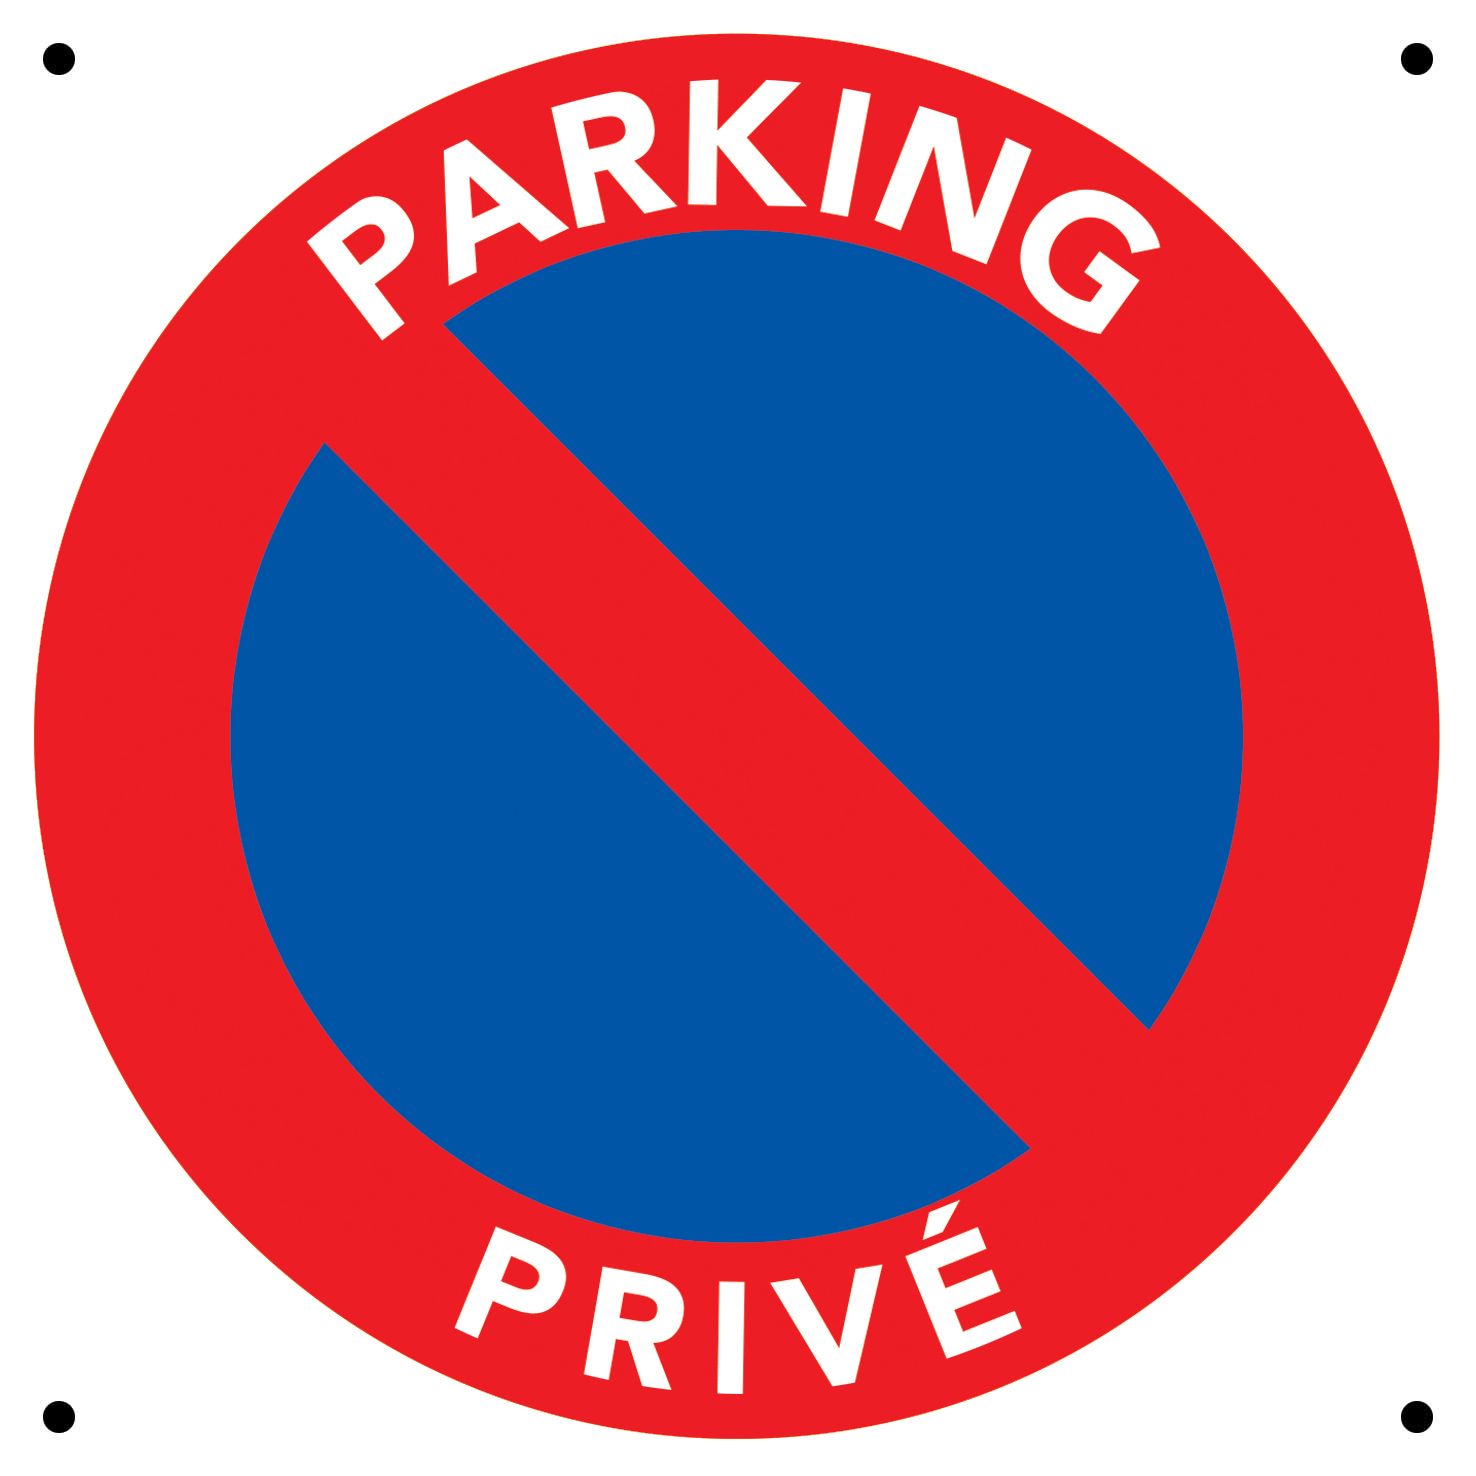 Panneaux parking